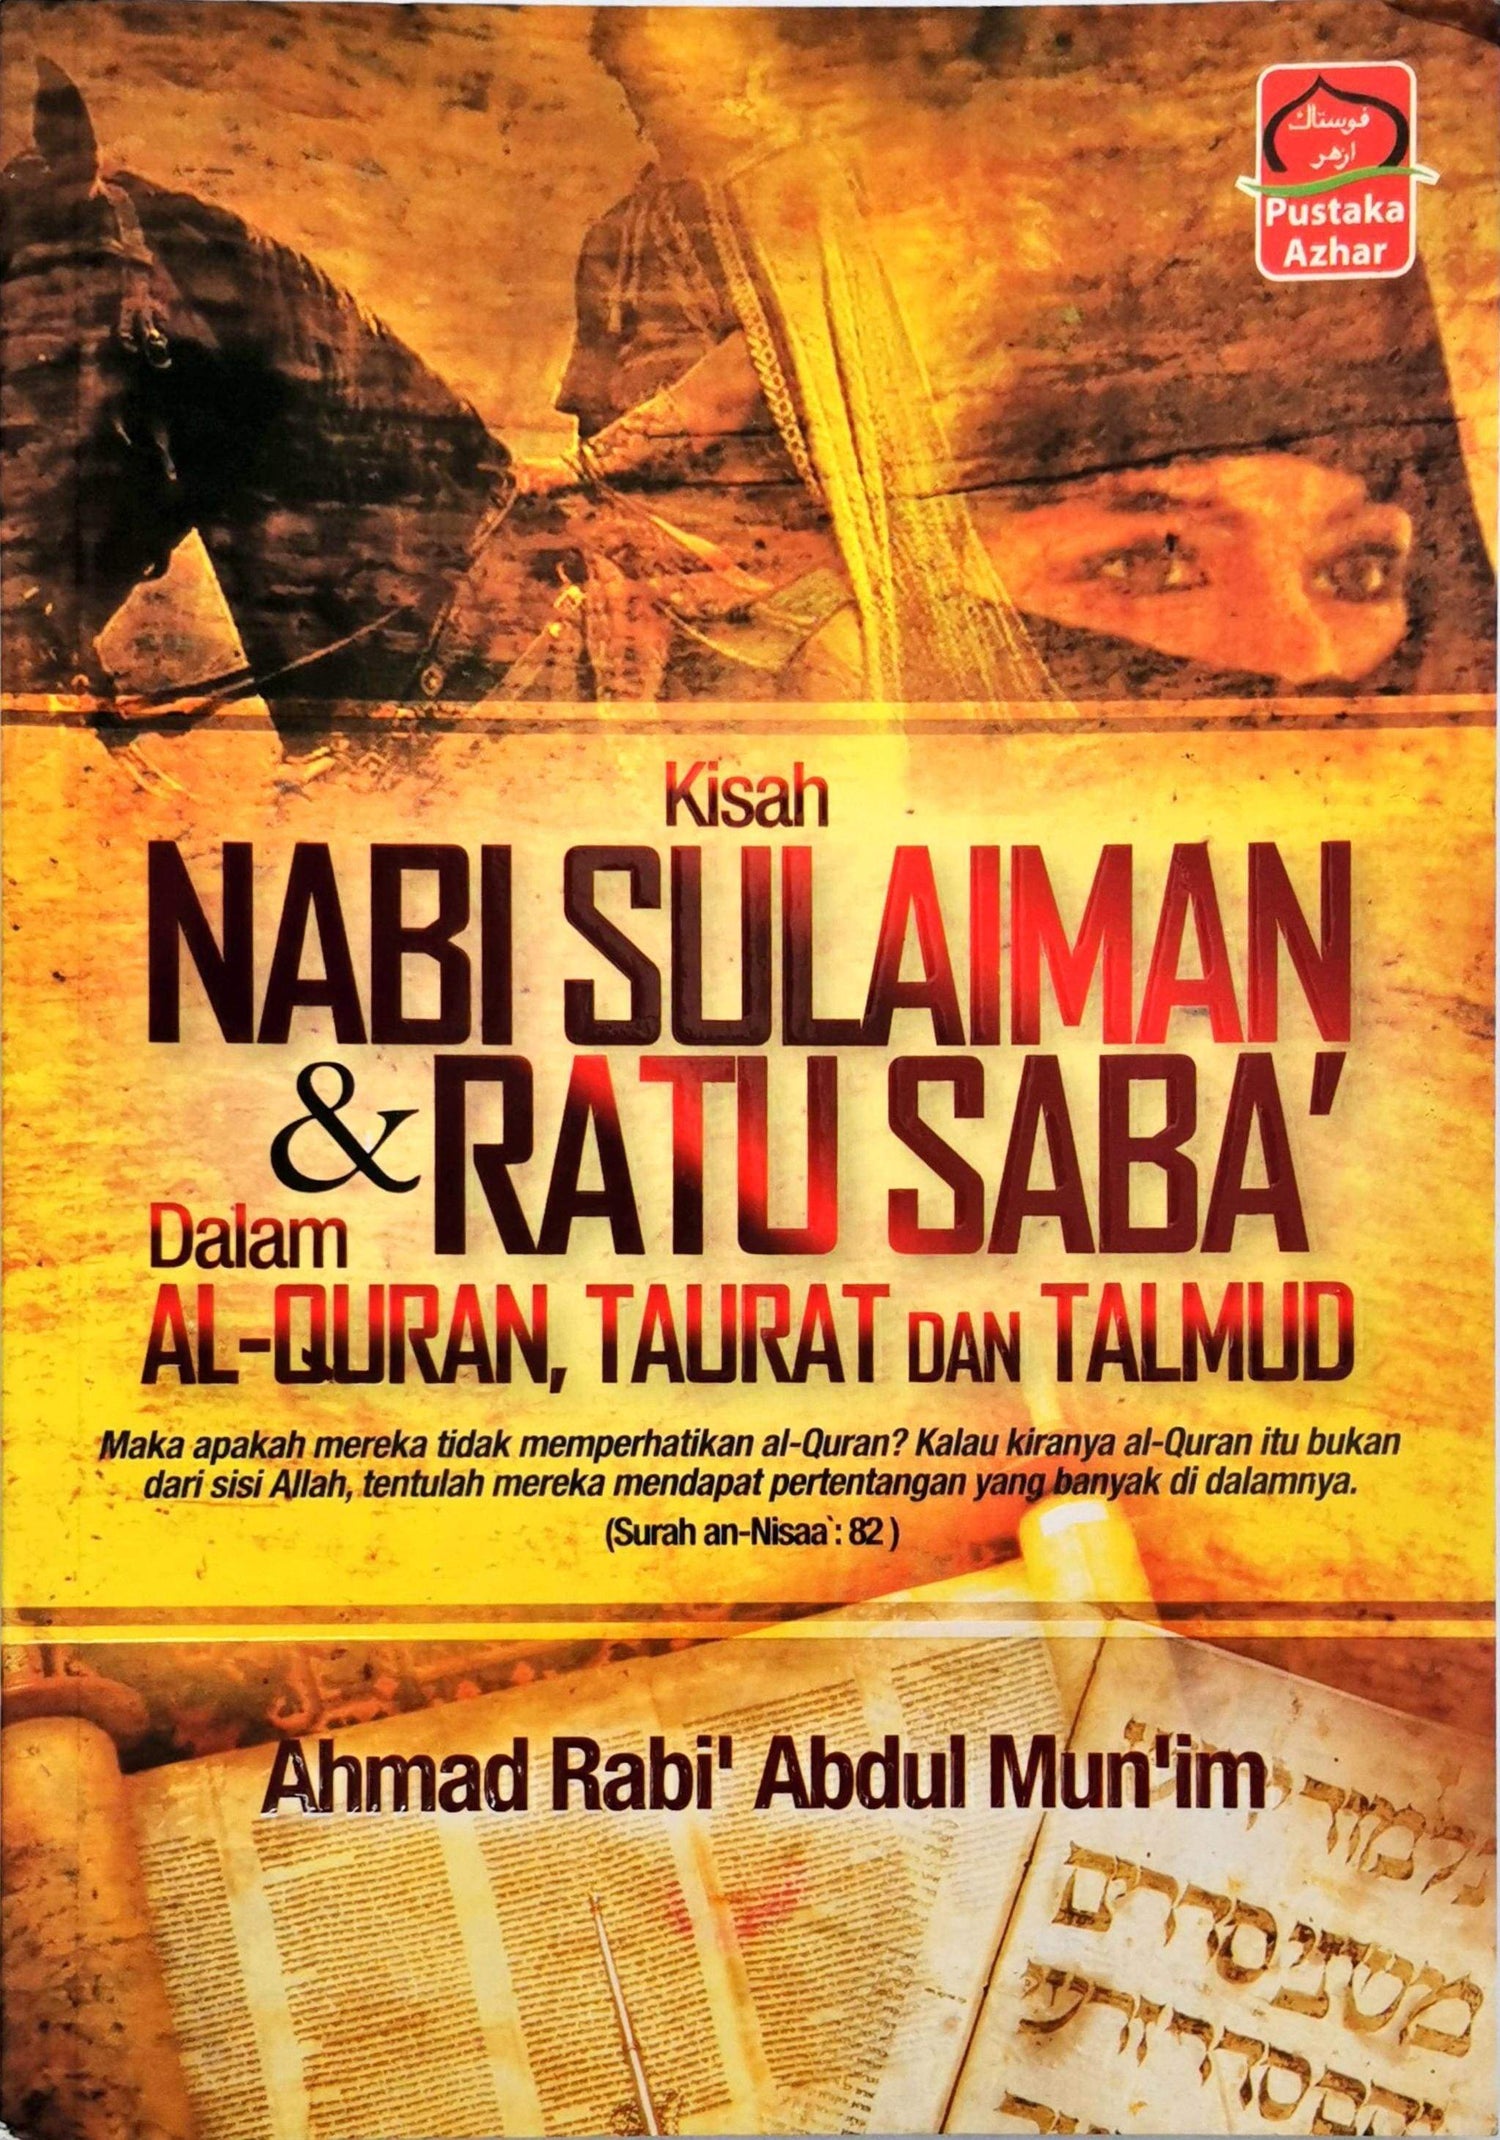 Kisah Nabi Sulaiman dan Ratu Saba' dalam Al-Quran, Taurat dan Talmud